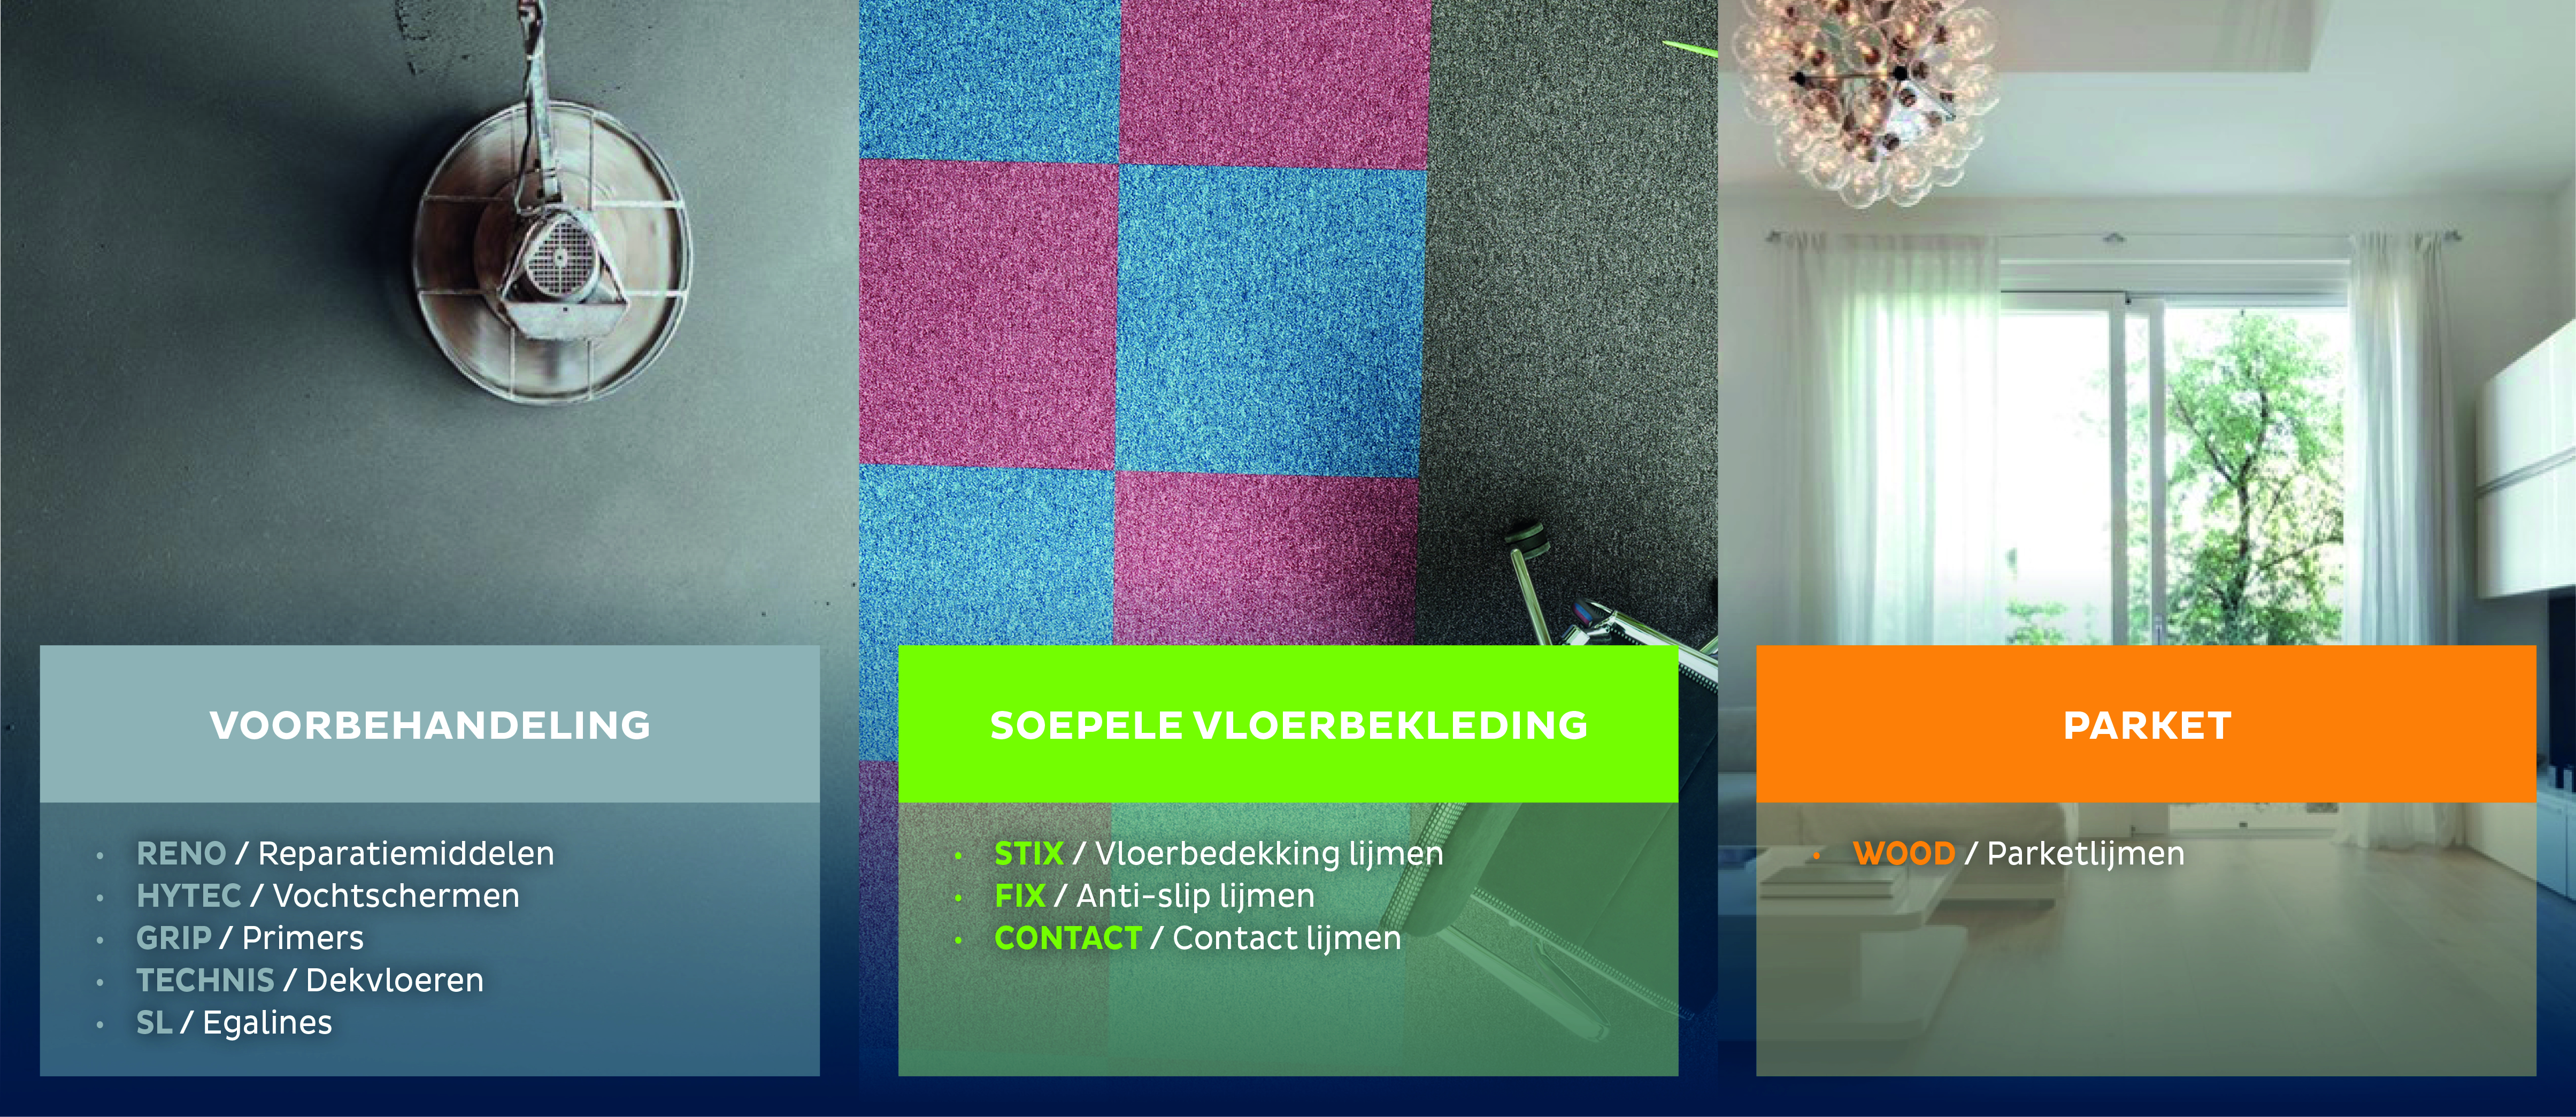 Bostik complète sa gamme One Flooring Range avec deux nouveaux produits